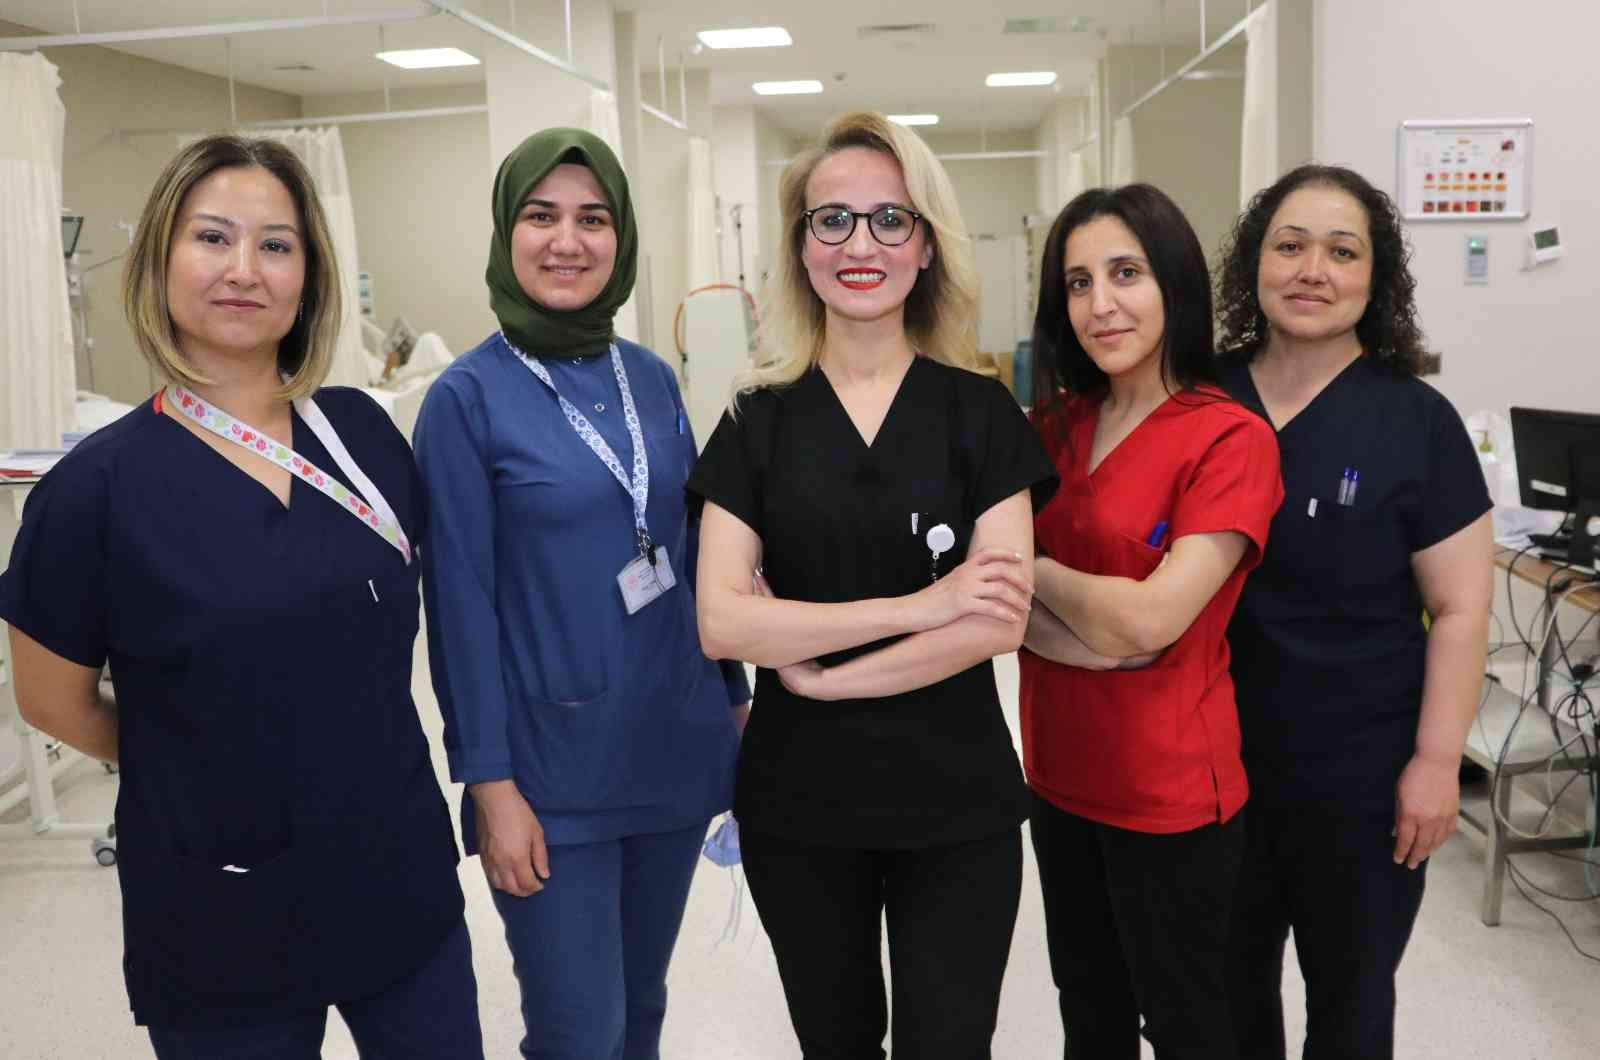 Sağlık çalışanı kadınlar şiddetin son bulmasını istedi #adana